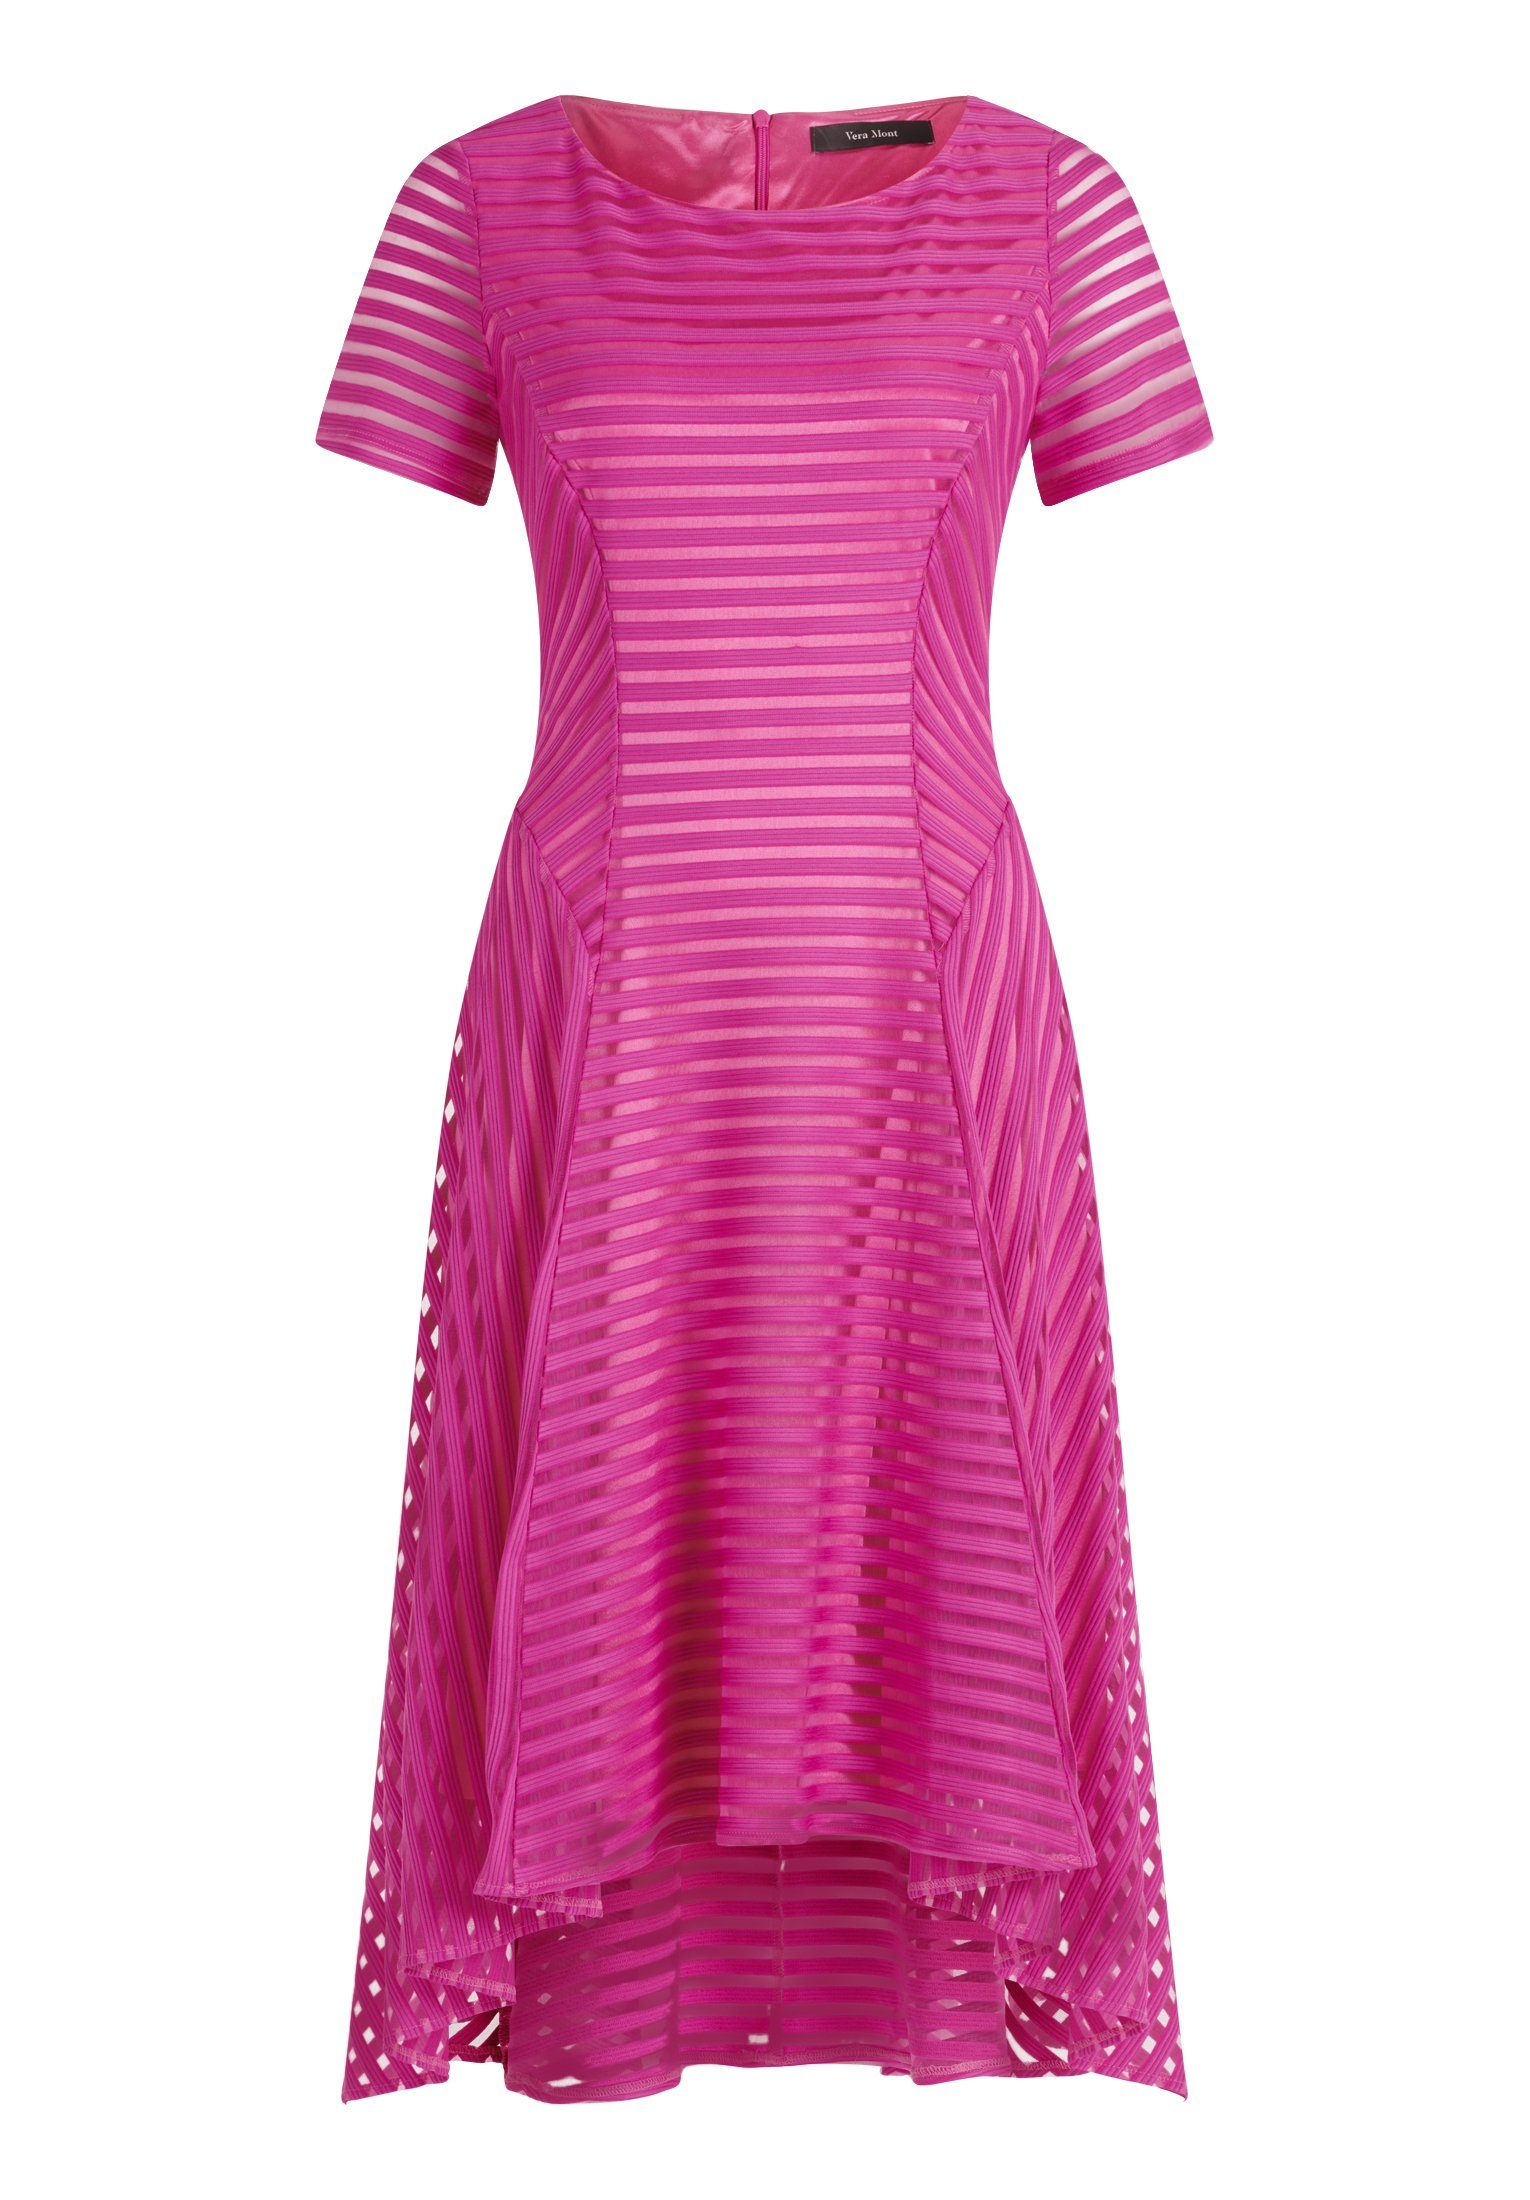 Vera Mont Abendkleid Kleid Lang 1/2 Arm online kaufen | OTTO